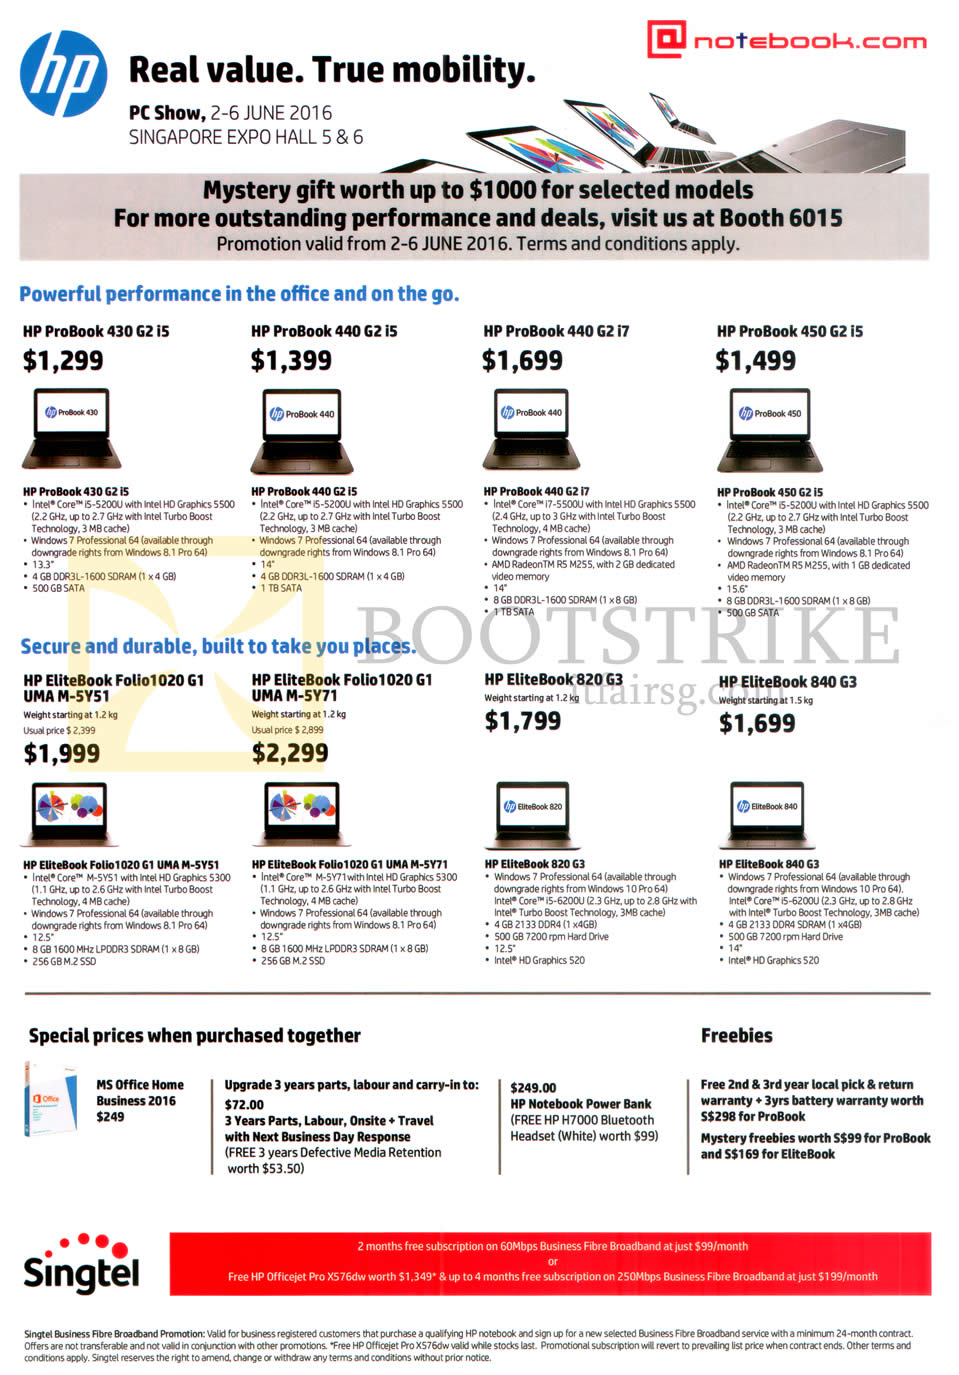 PC SHOW 2016 price list image brochure of HP Notebooks ProBook 430 G2 I5, 440 G2 I5, 440 G2 I7, 450 G2 I5, EliteBook Folio 1020 G1 UMA M-5Y51, 820 G3, 840 G3